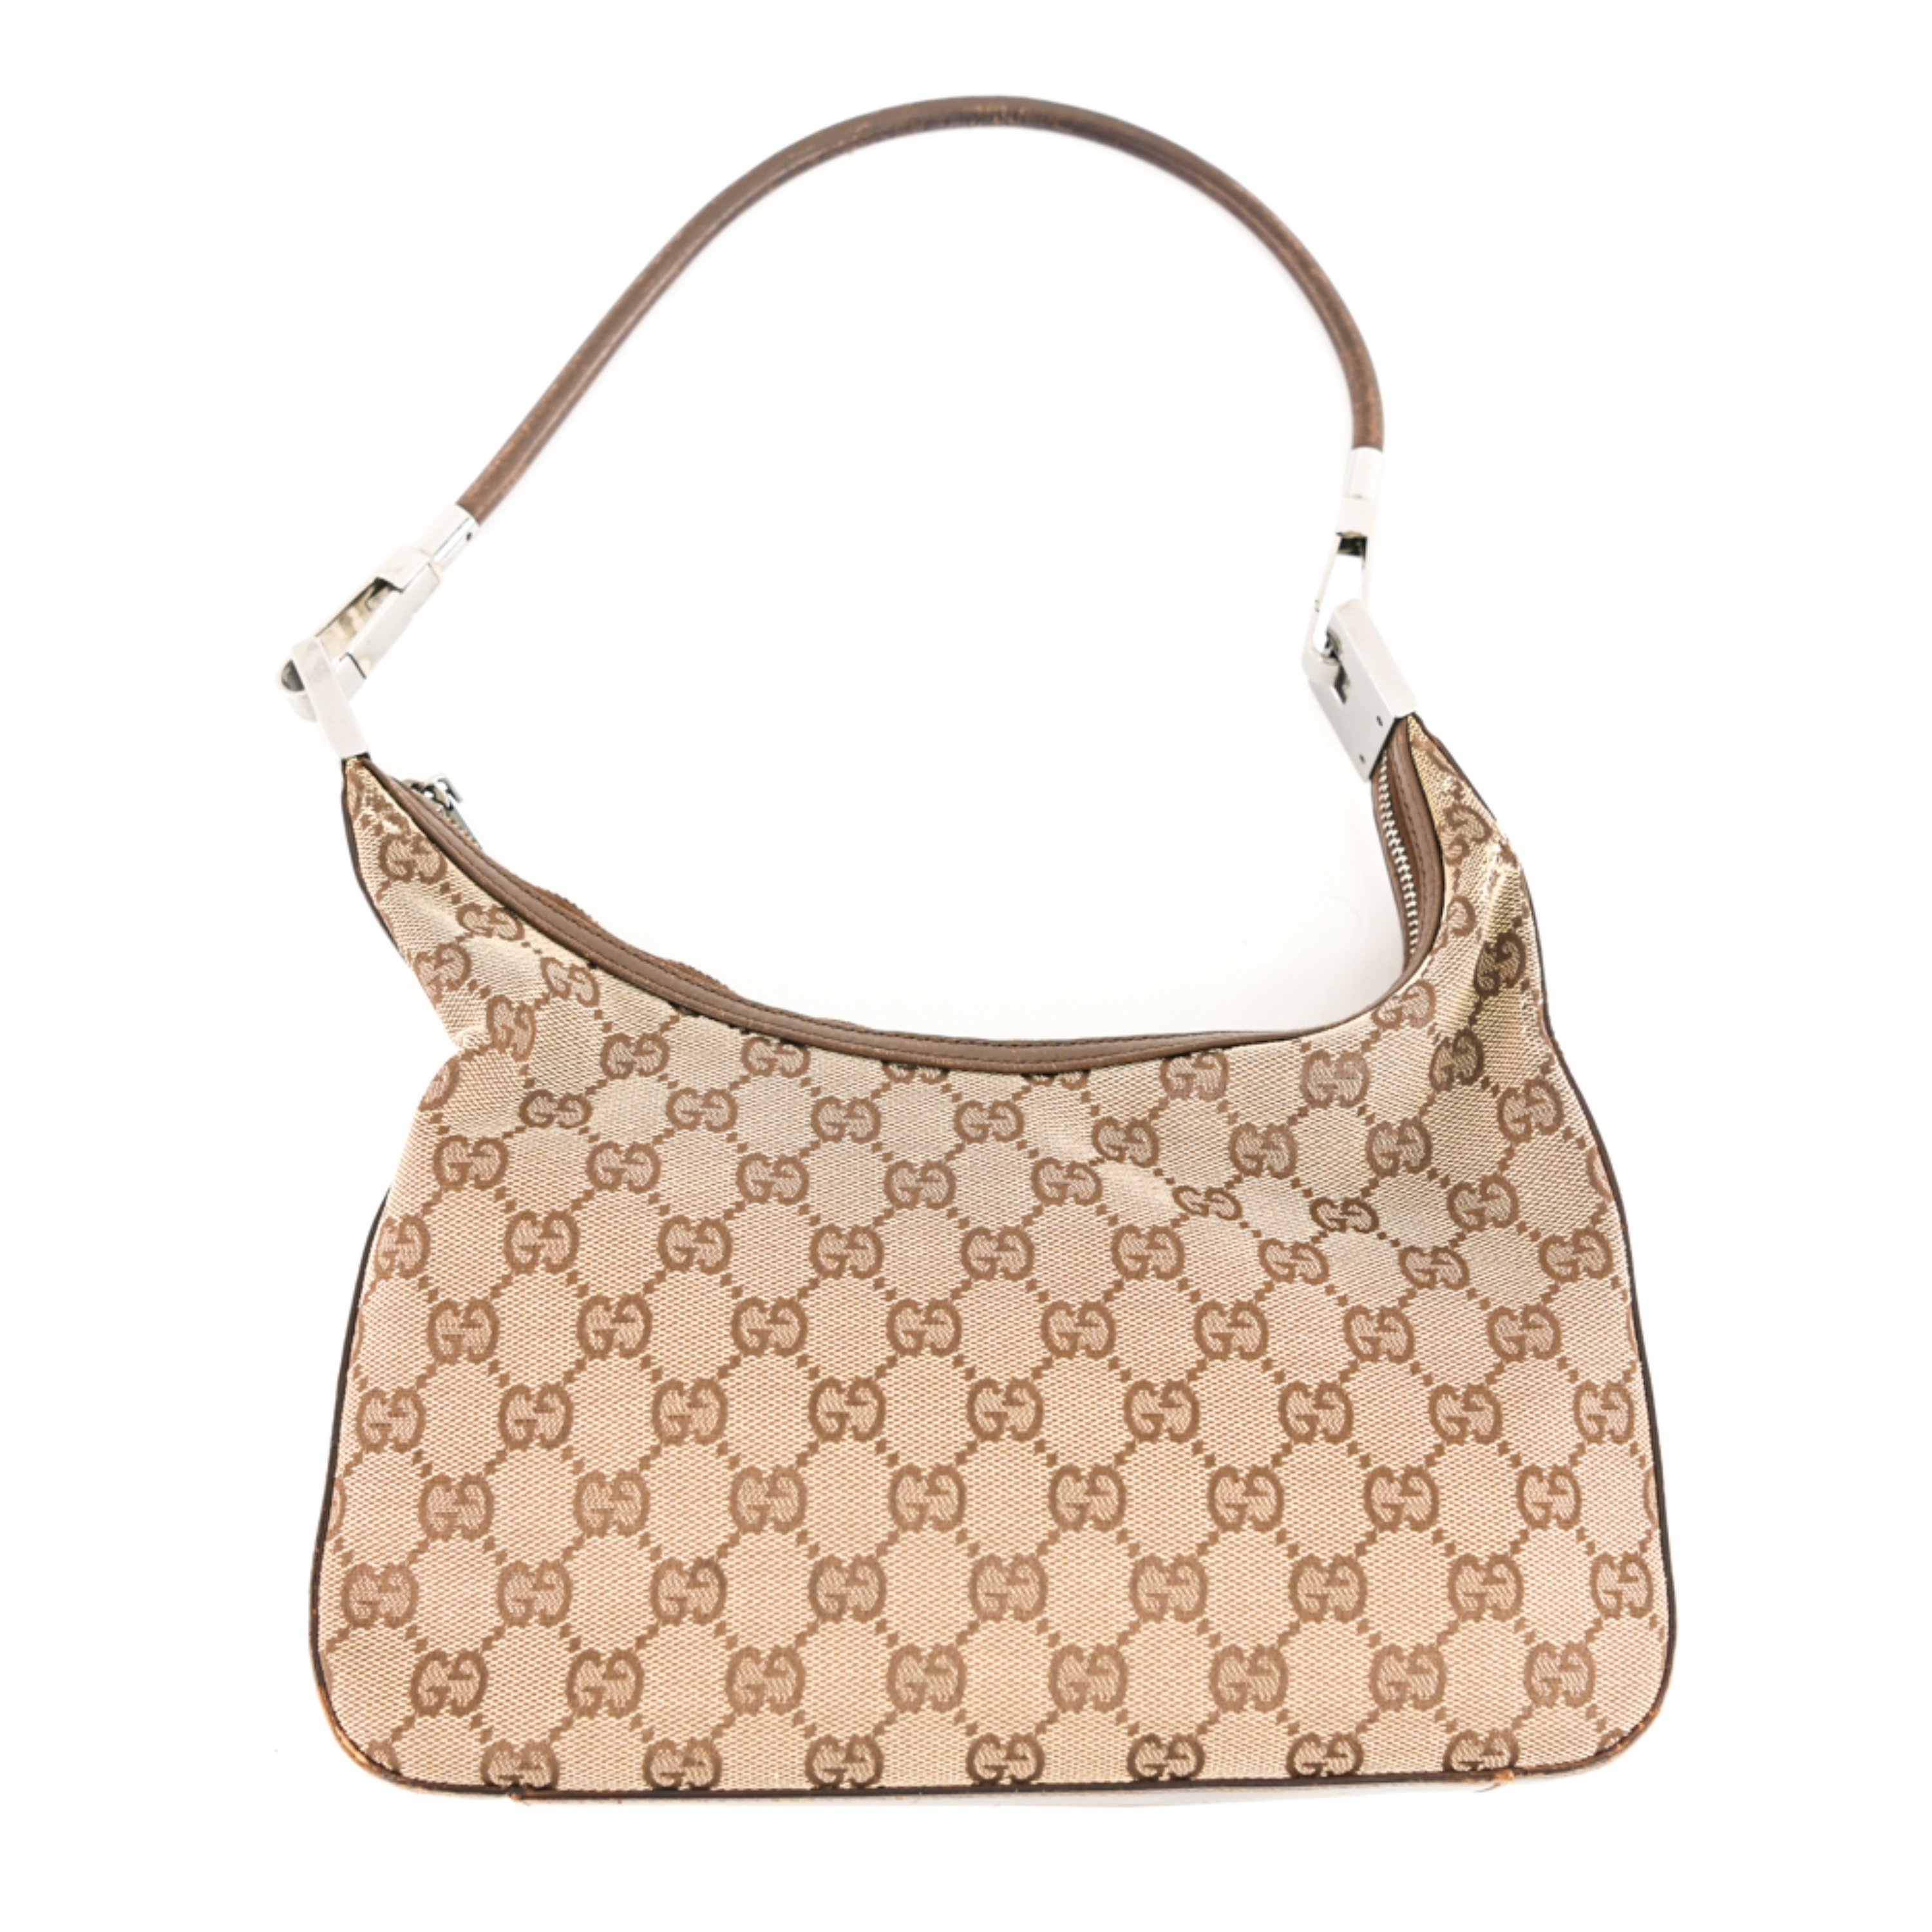 Sold at Auction: Gucci GG Hobo Shoulder Bag in Beige